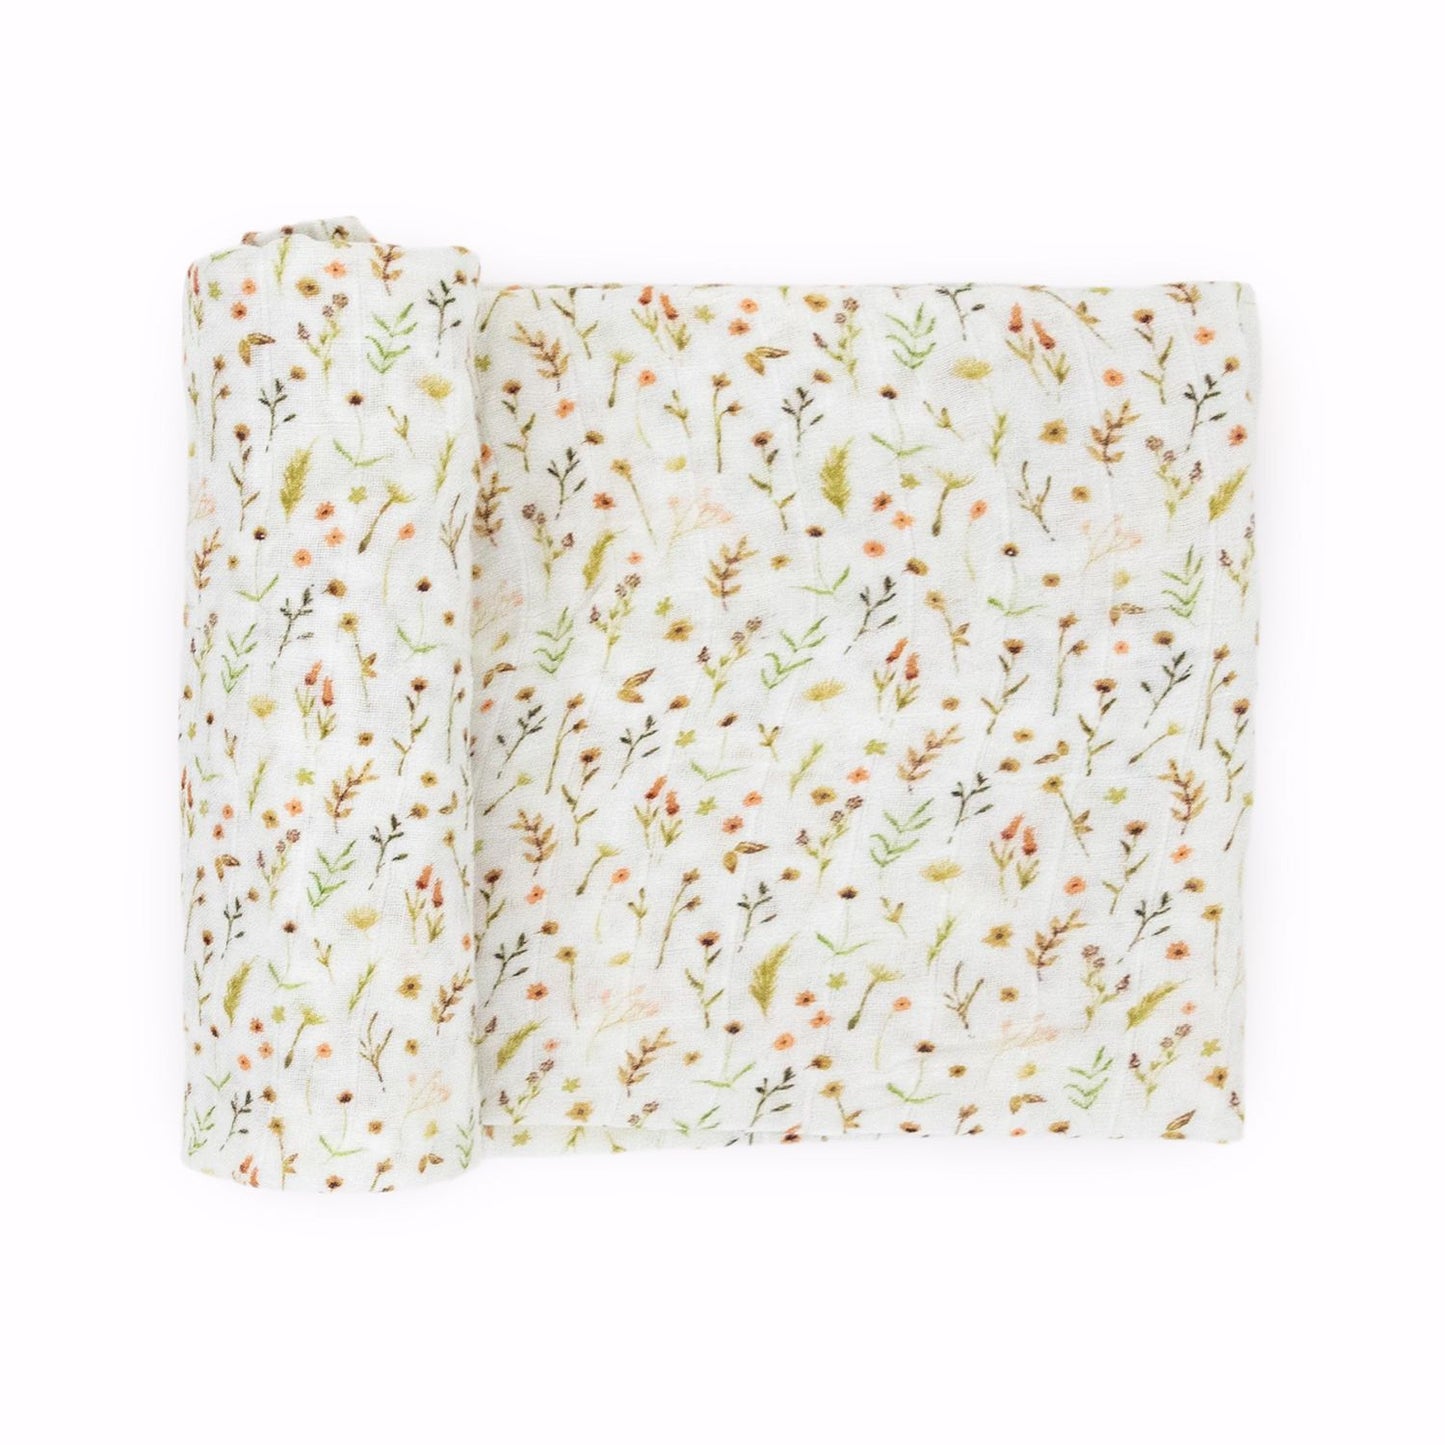 Little Unicorn Organic Cotton Muslin Swaddle Blanket - Floral Field